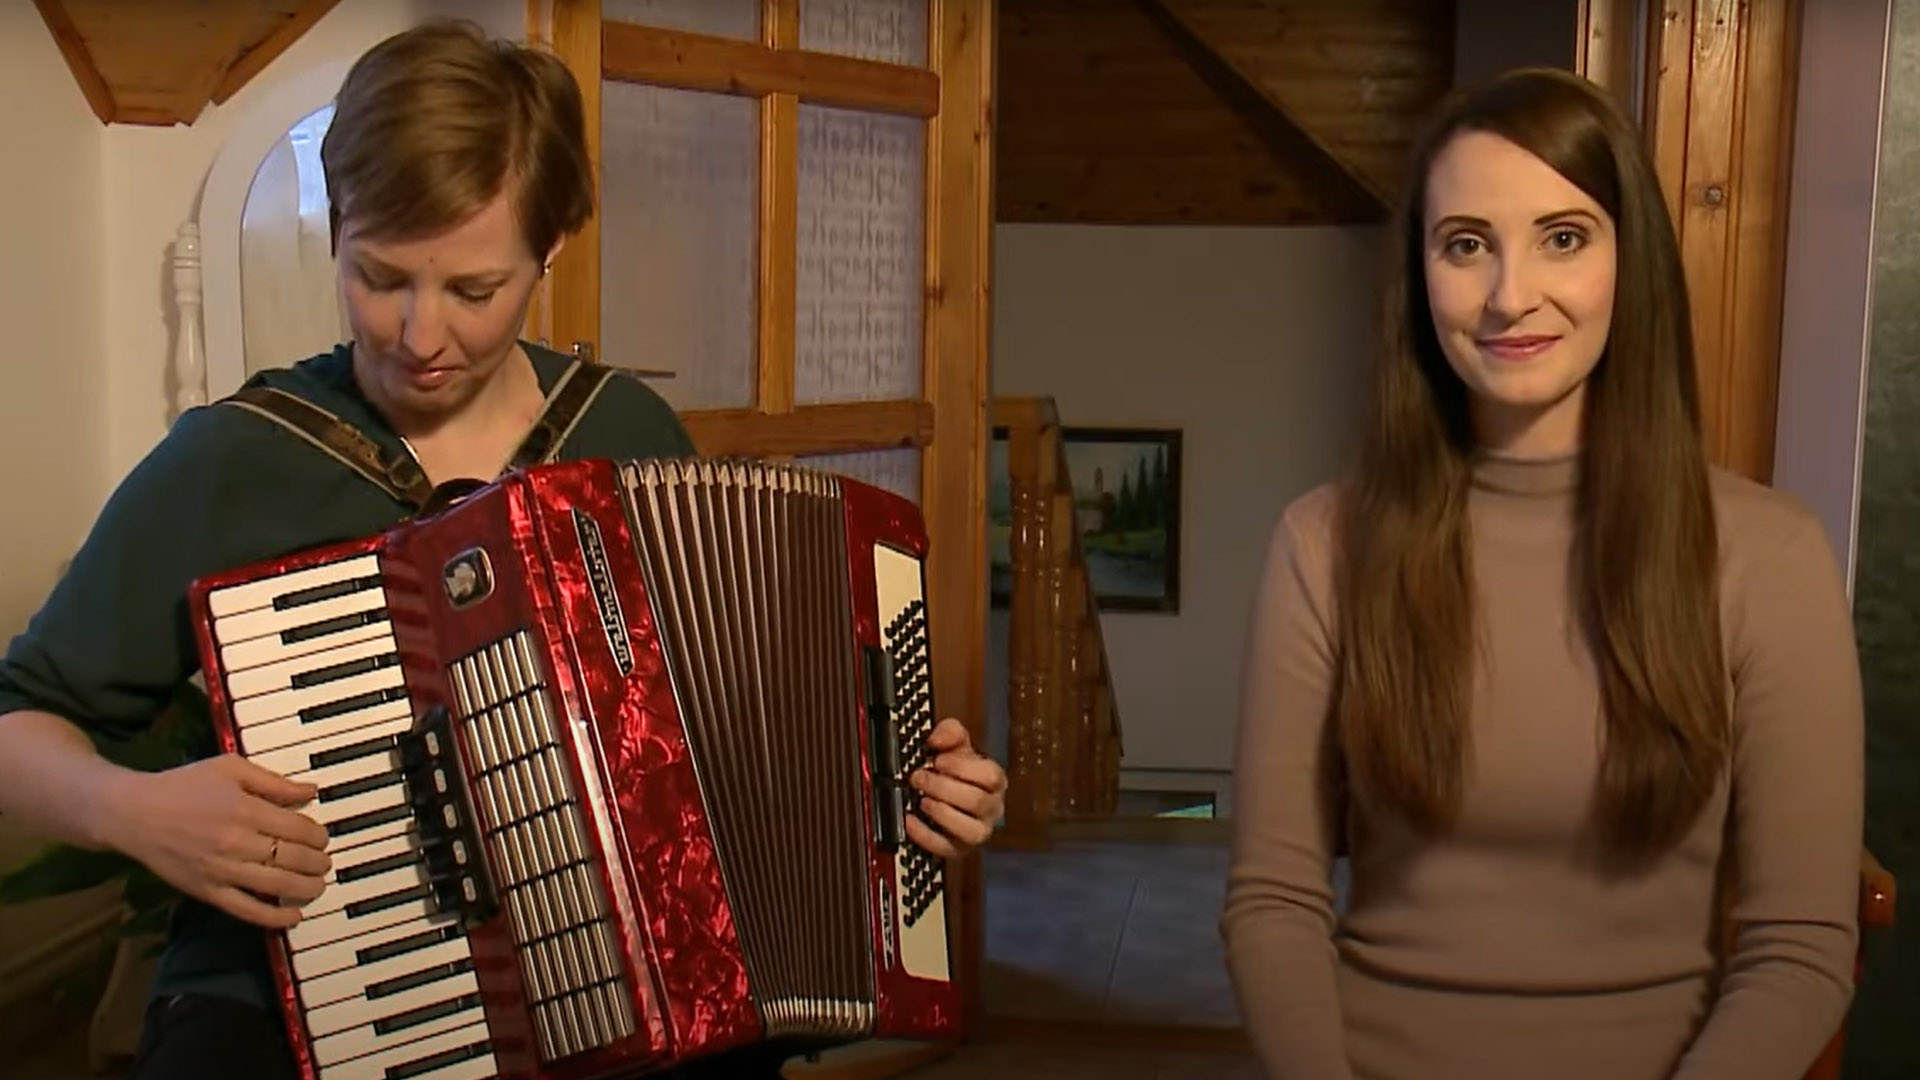 Über die ungarndeutschen Volkslieder in Sitsch – Teil 2: Zweisprachige Lieder